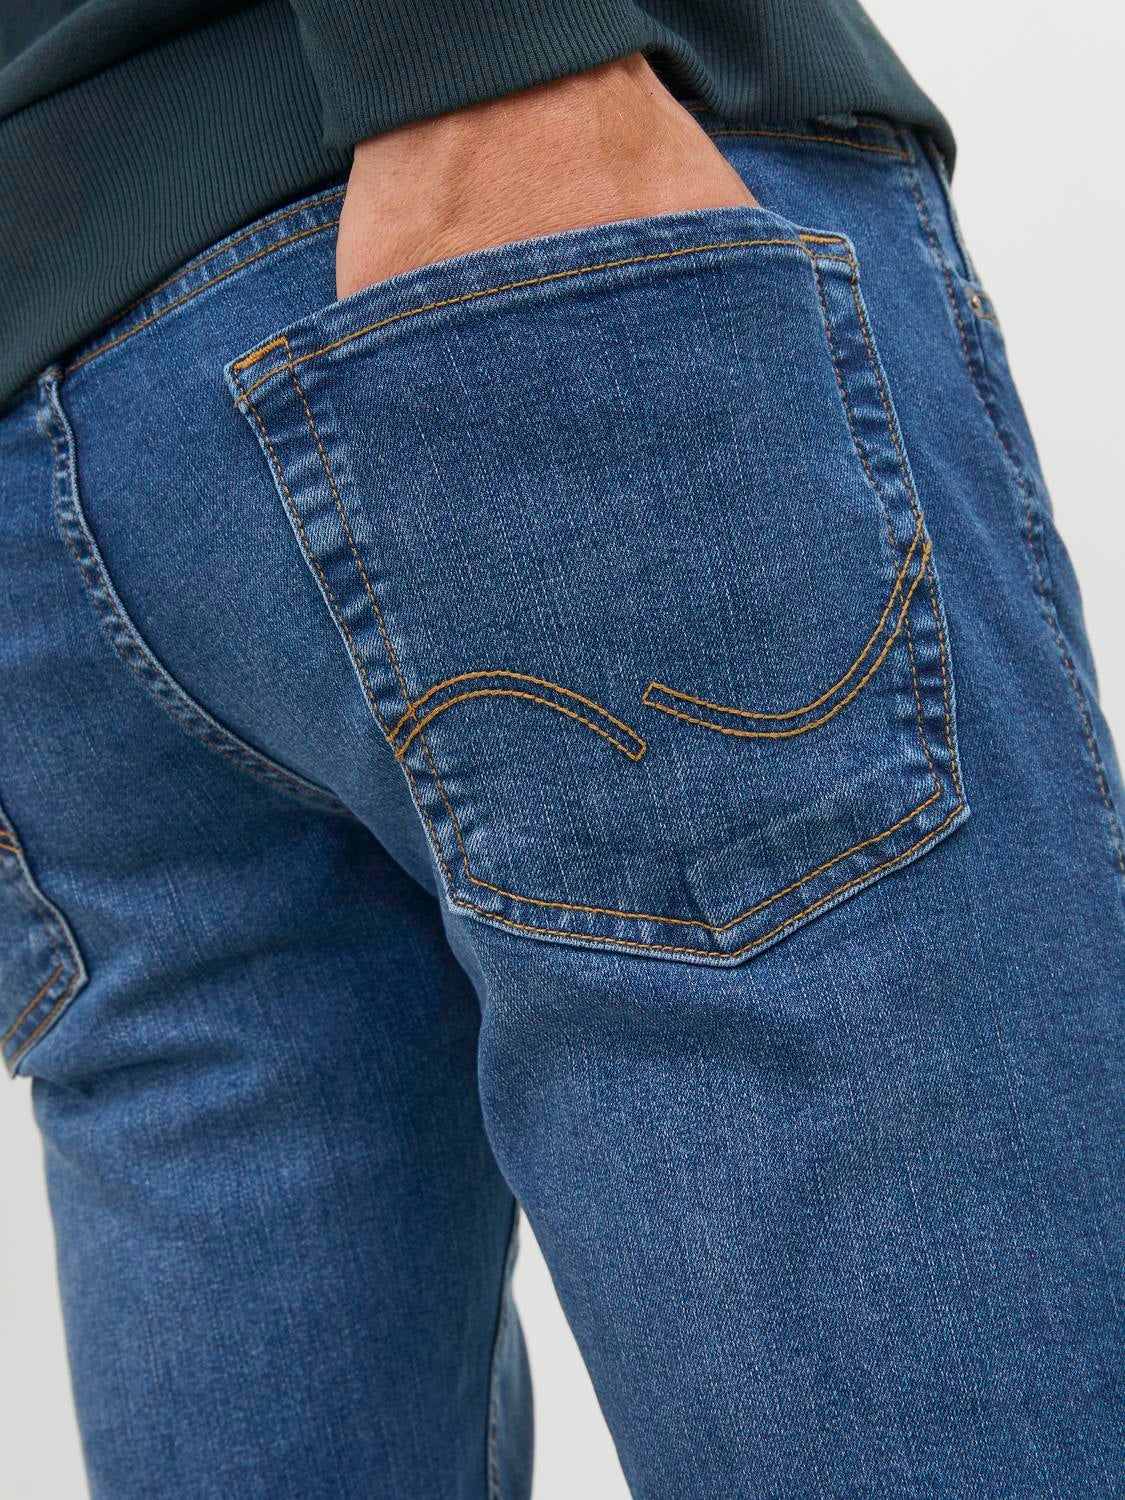 KL Jeans, Klj Monogram Slim Denim, Man, WASHED GREY, Size: 3032